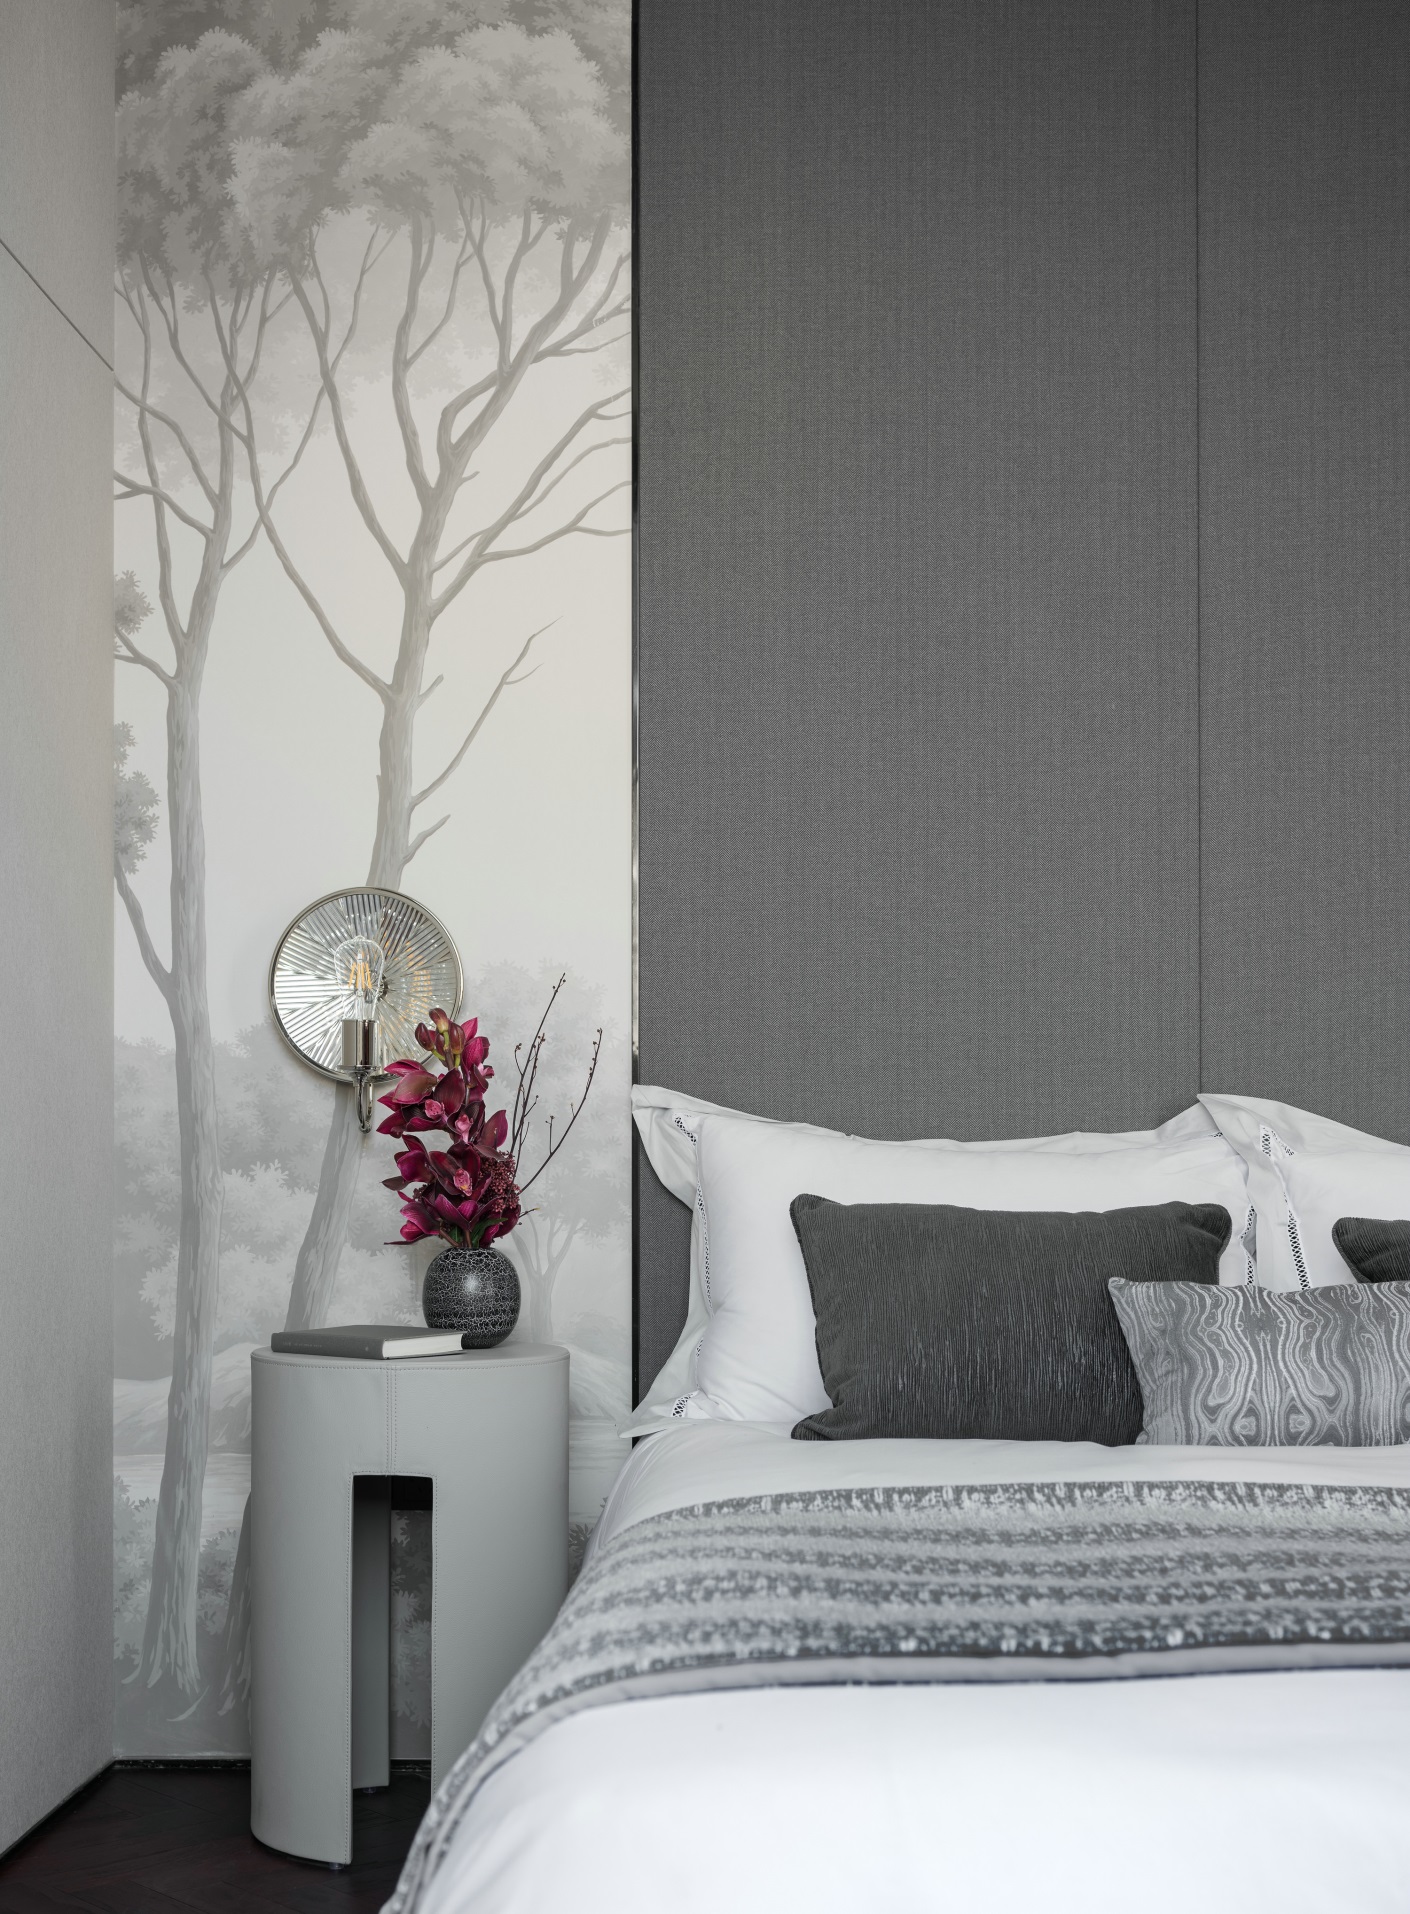 侧卧使用白色和灰色对比设计，搭配同色系床品设计，给人以很强的秩序感。